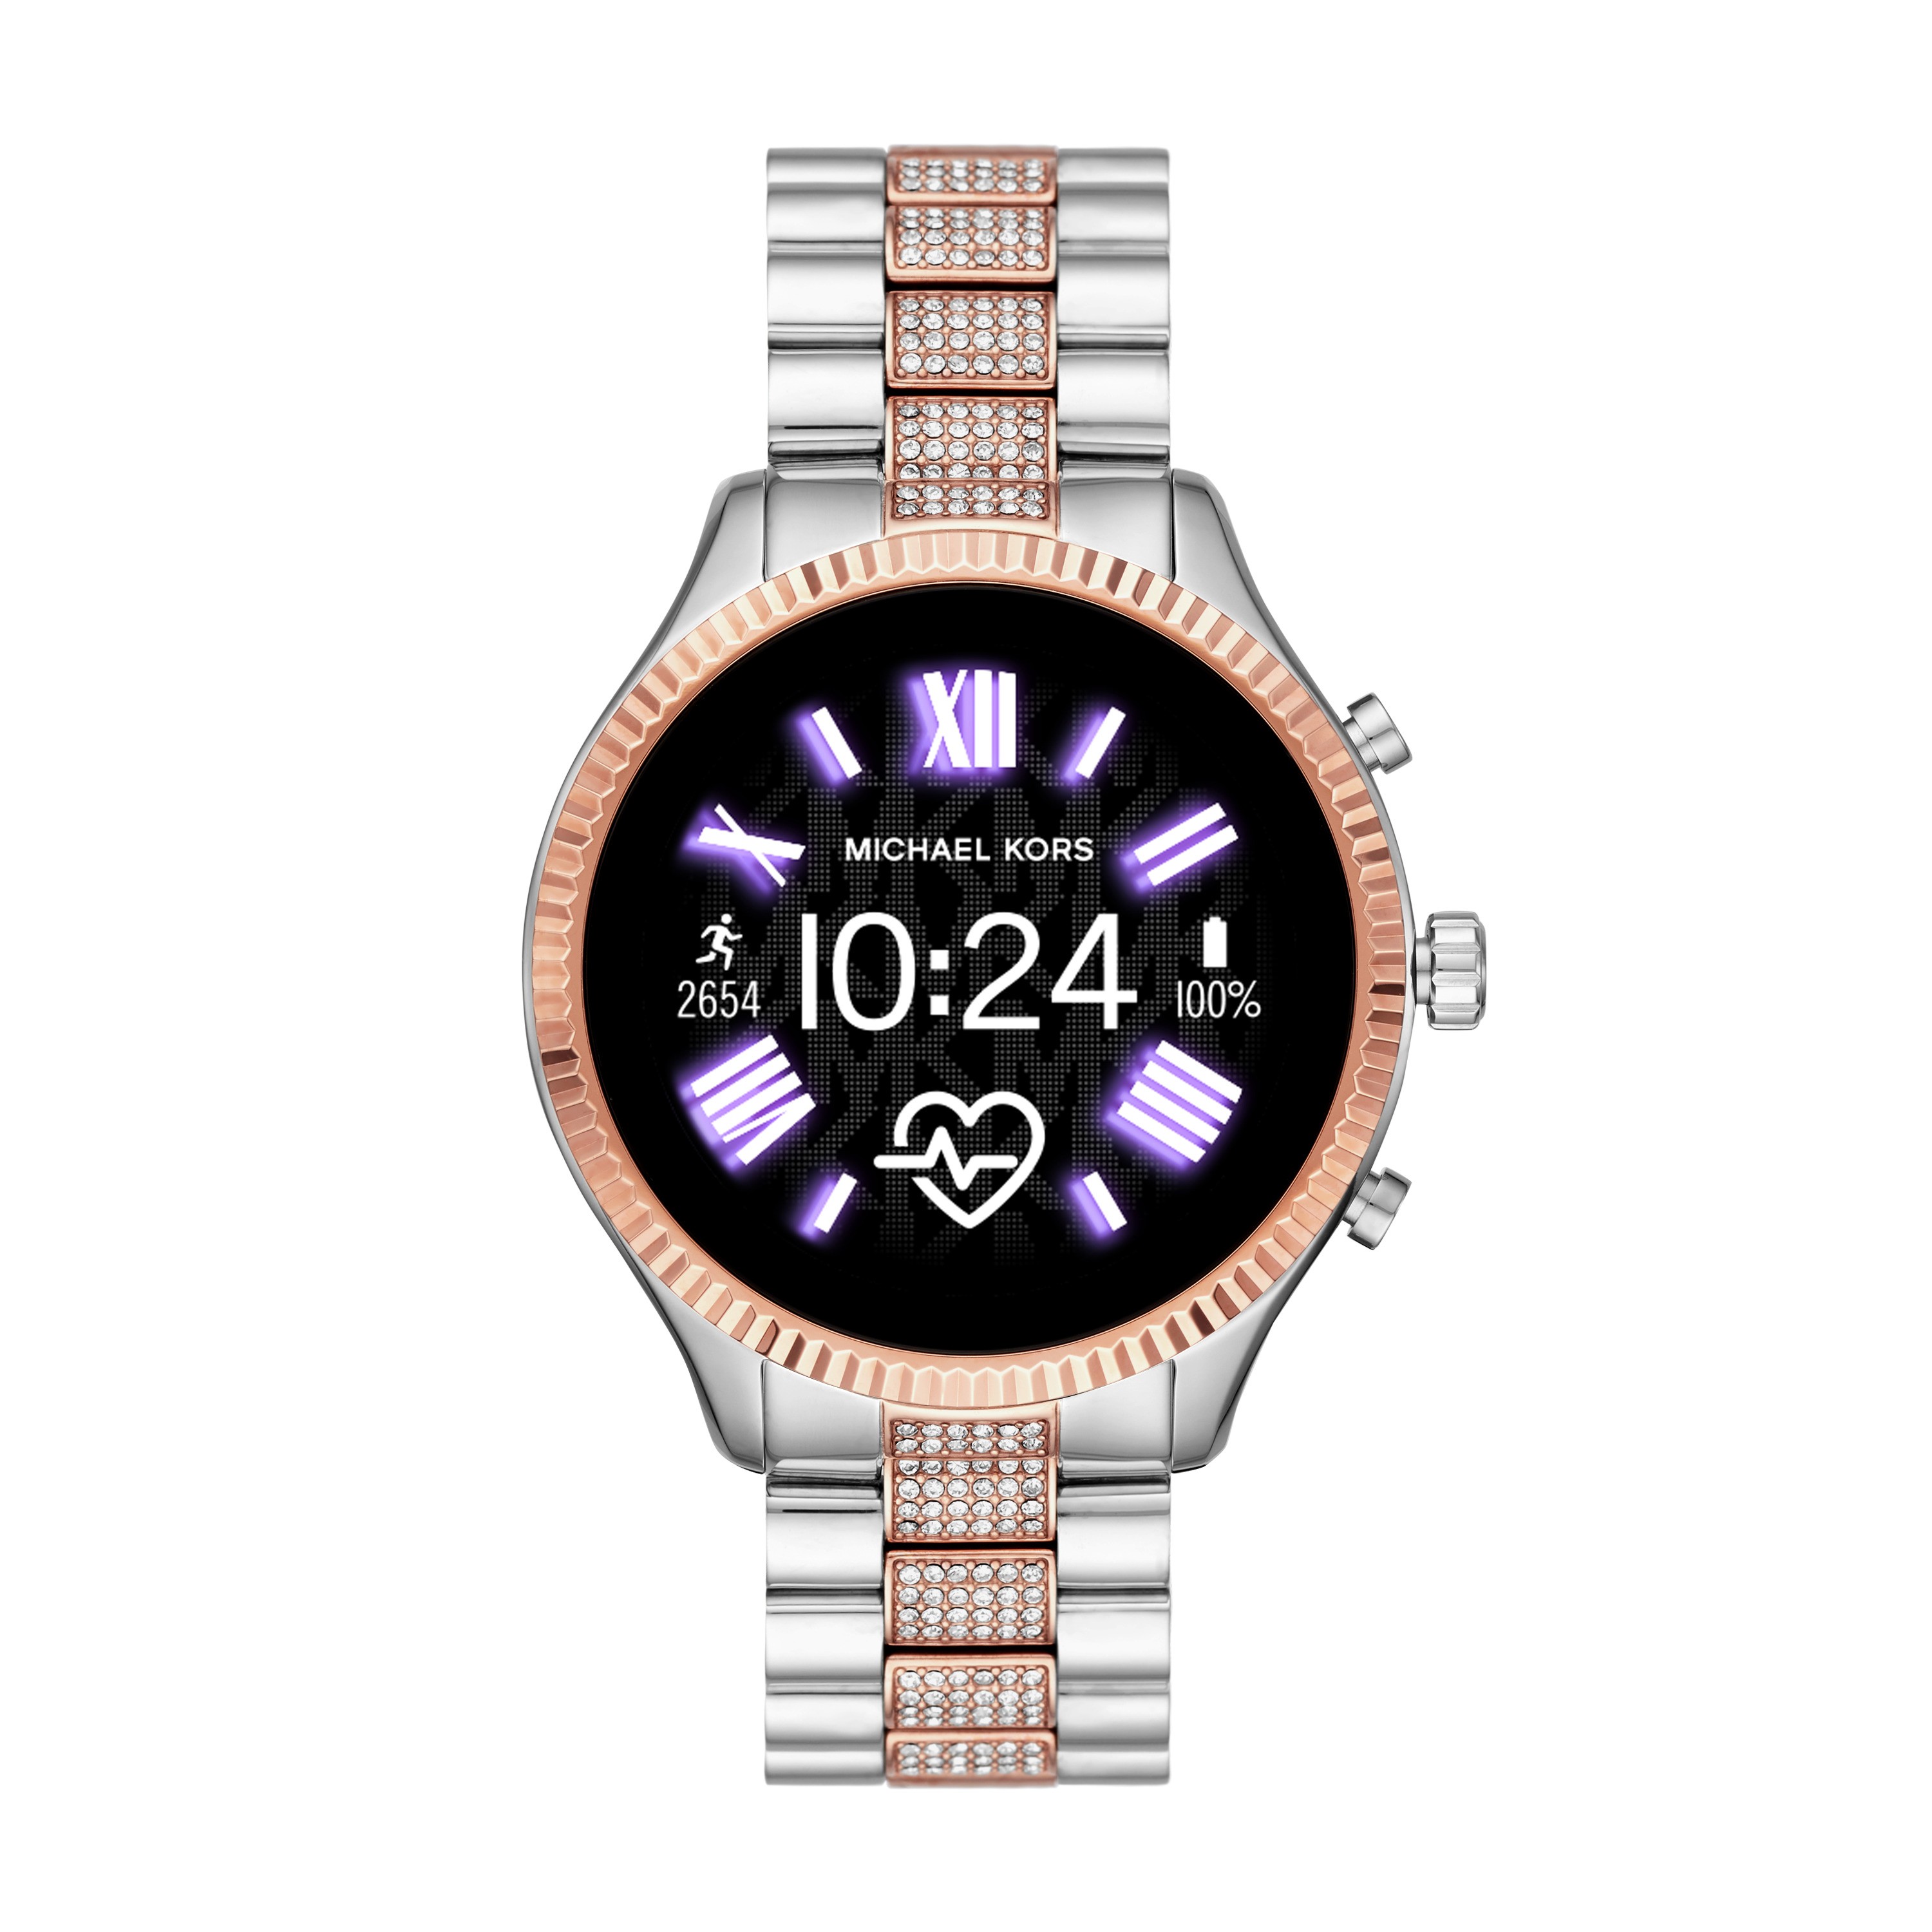 michael kors women's smart watches